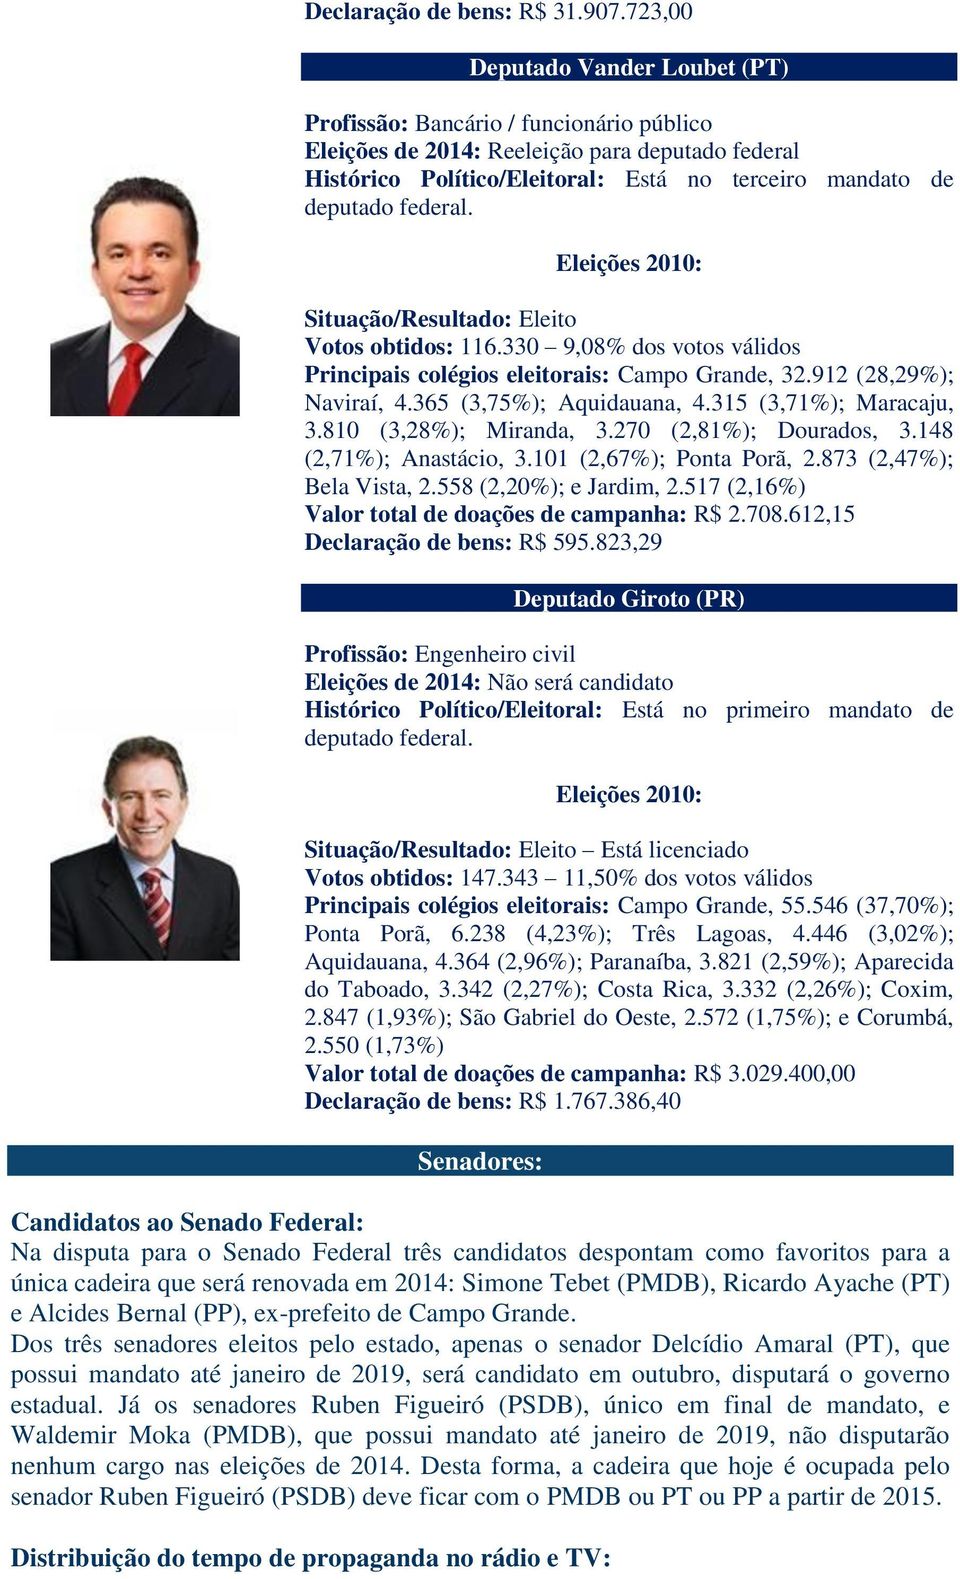 116.330 9,08% dos votos válidos Principais colégios eleitorais: Campo Grande, 32.912 (28,29%); Naviraí, 4.365 (3,75%); Aquidauana, 4.315 (3,71%); Maracaju, 3.810 (3,28%); Miranda, 3.